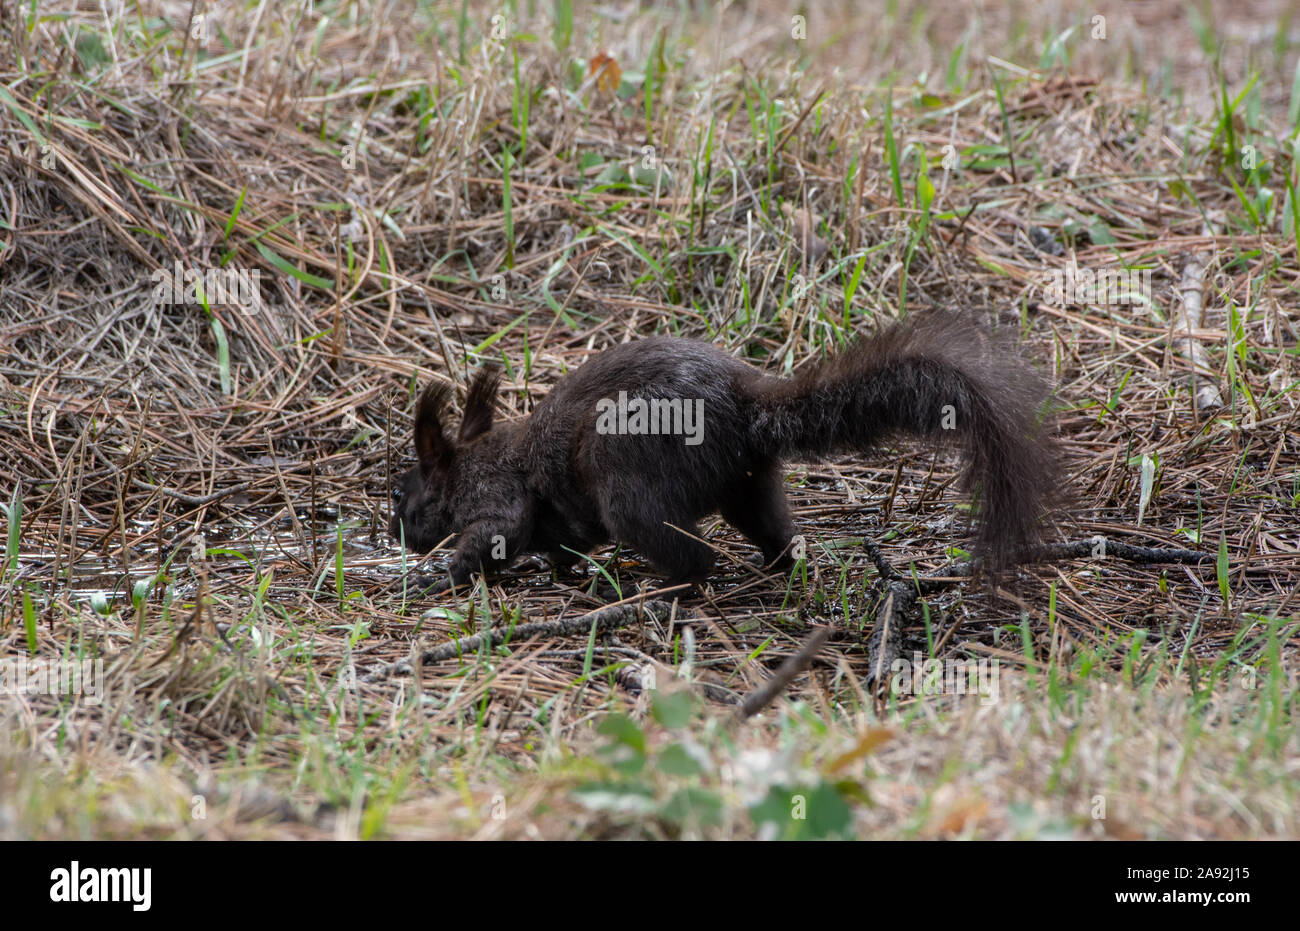 Abert's Squirrel (Sciurus aberti) from Jefferson County, Colorado, USA. Stock Photo